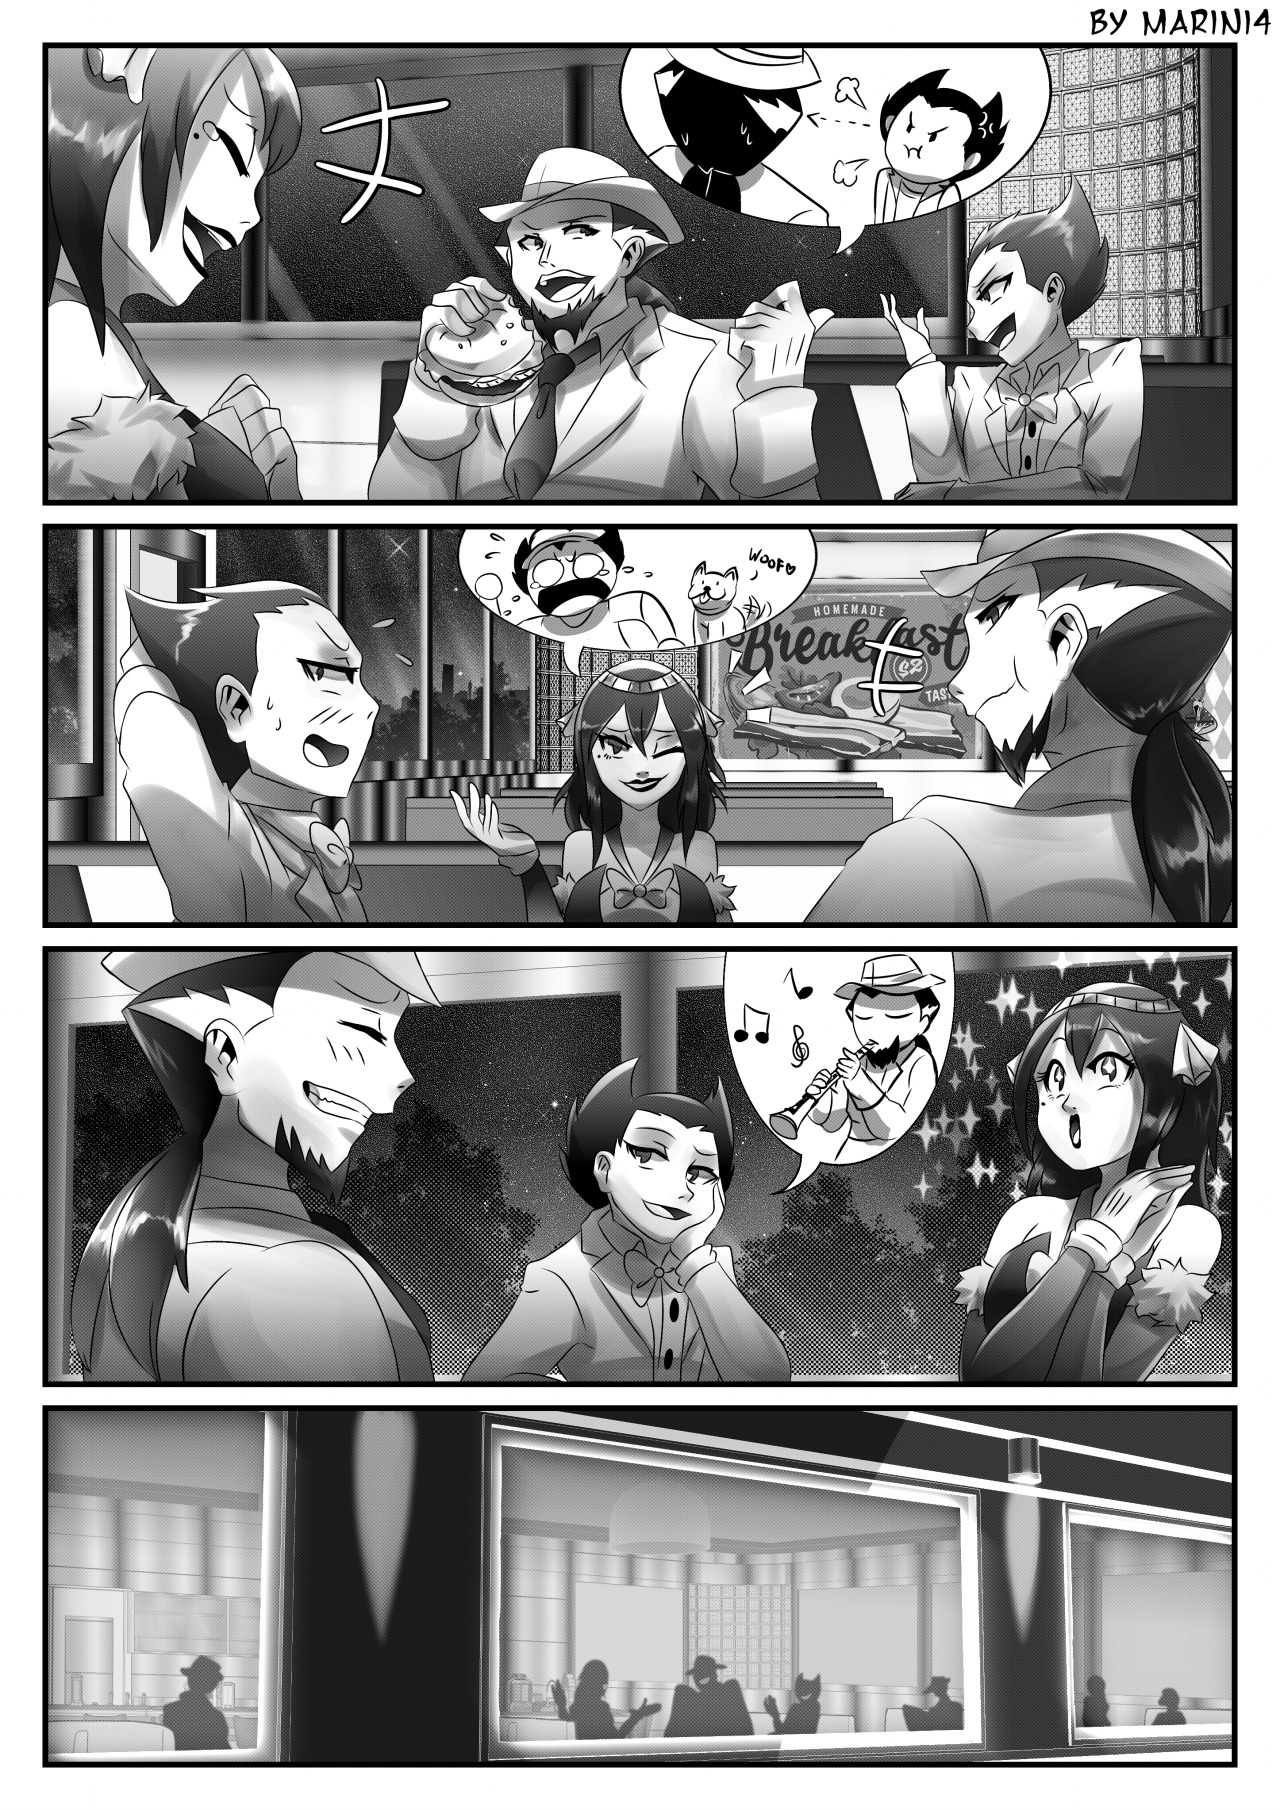 The Gamer - Part 5 Manga